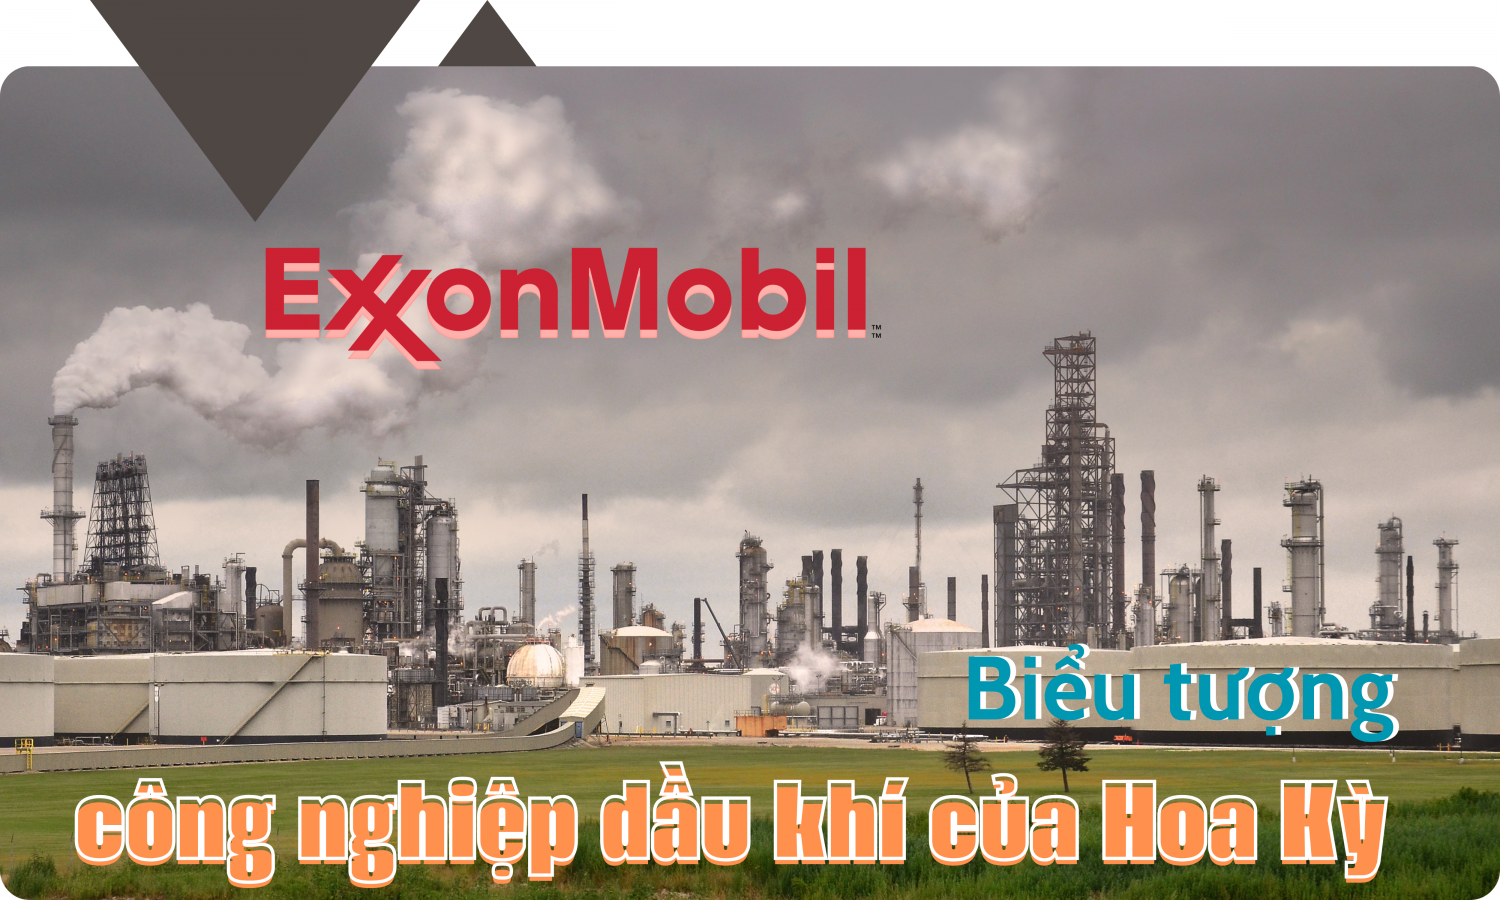 Exxon Mobil – Biểu tượng công nghiệp dầu khí của Hoa Kỳ